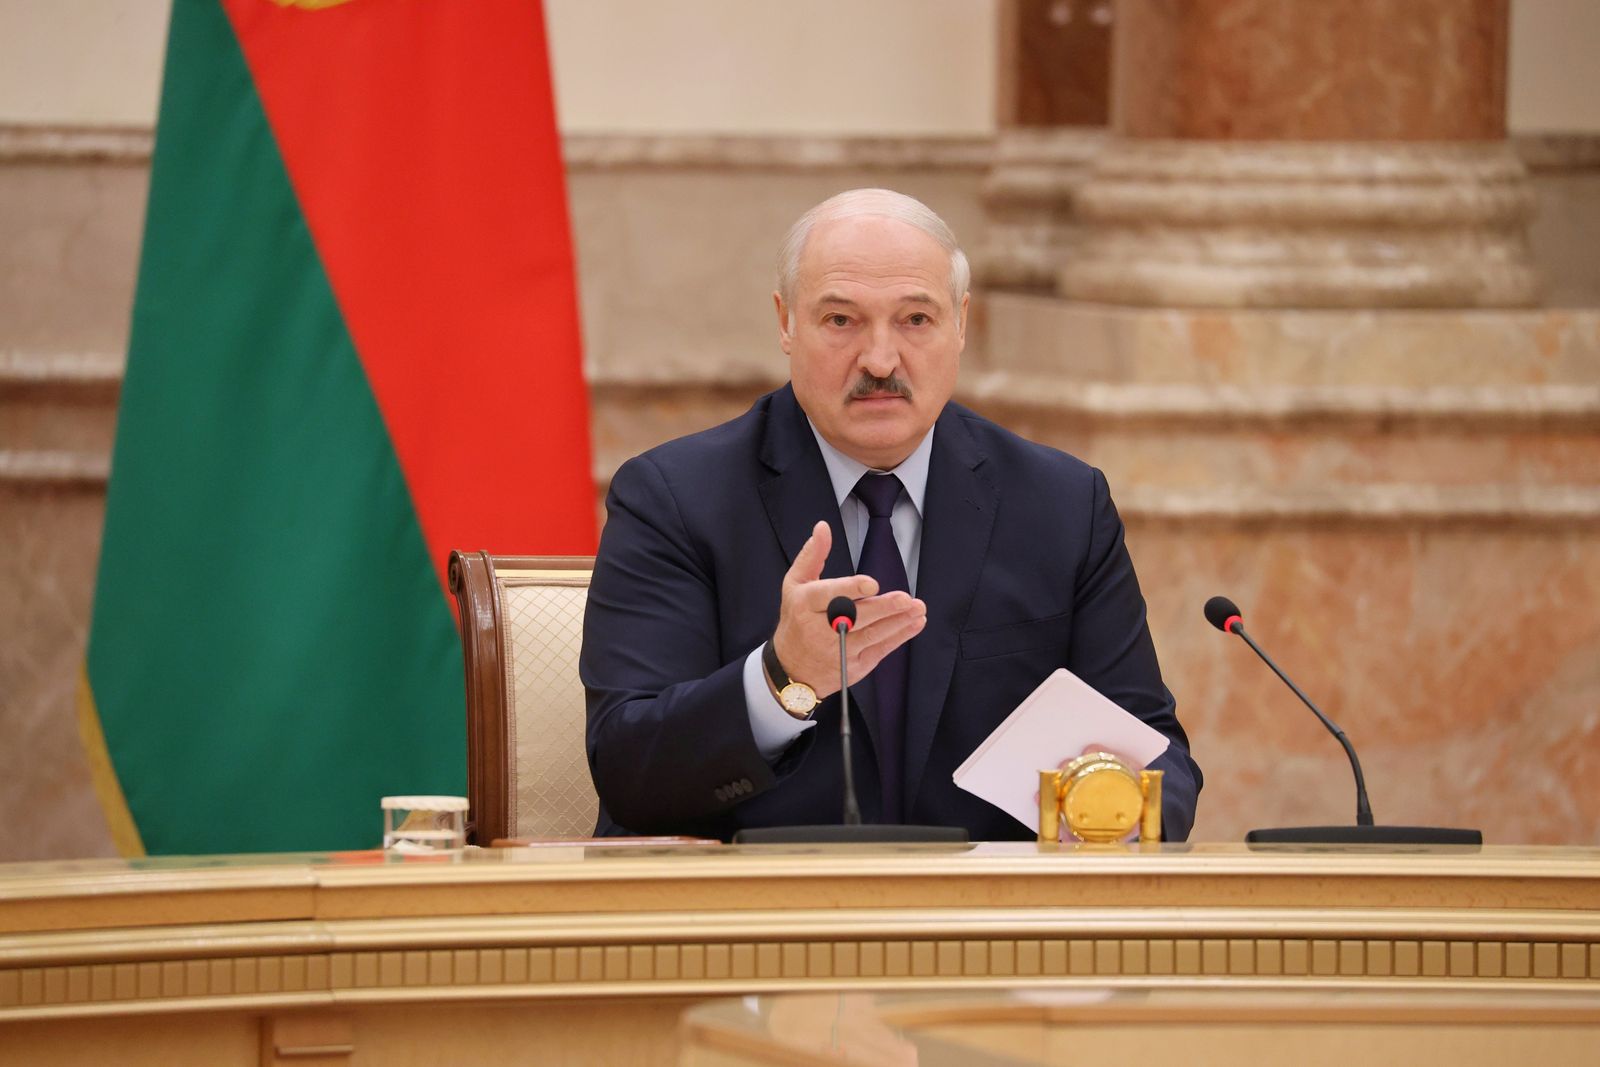 رئيس بيلاروسيا ألكسندر لوكاشينكو يحضر اجتماع اللجنة الدستورية في مينسك - REUTERS